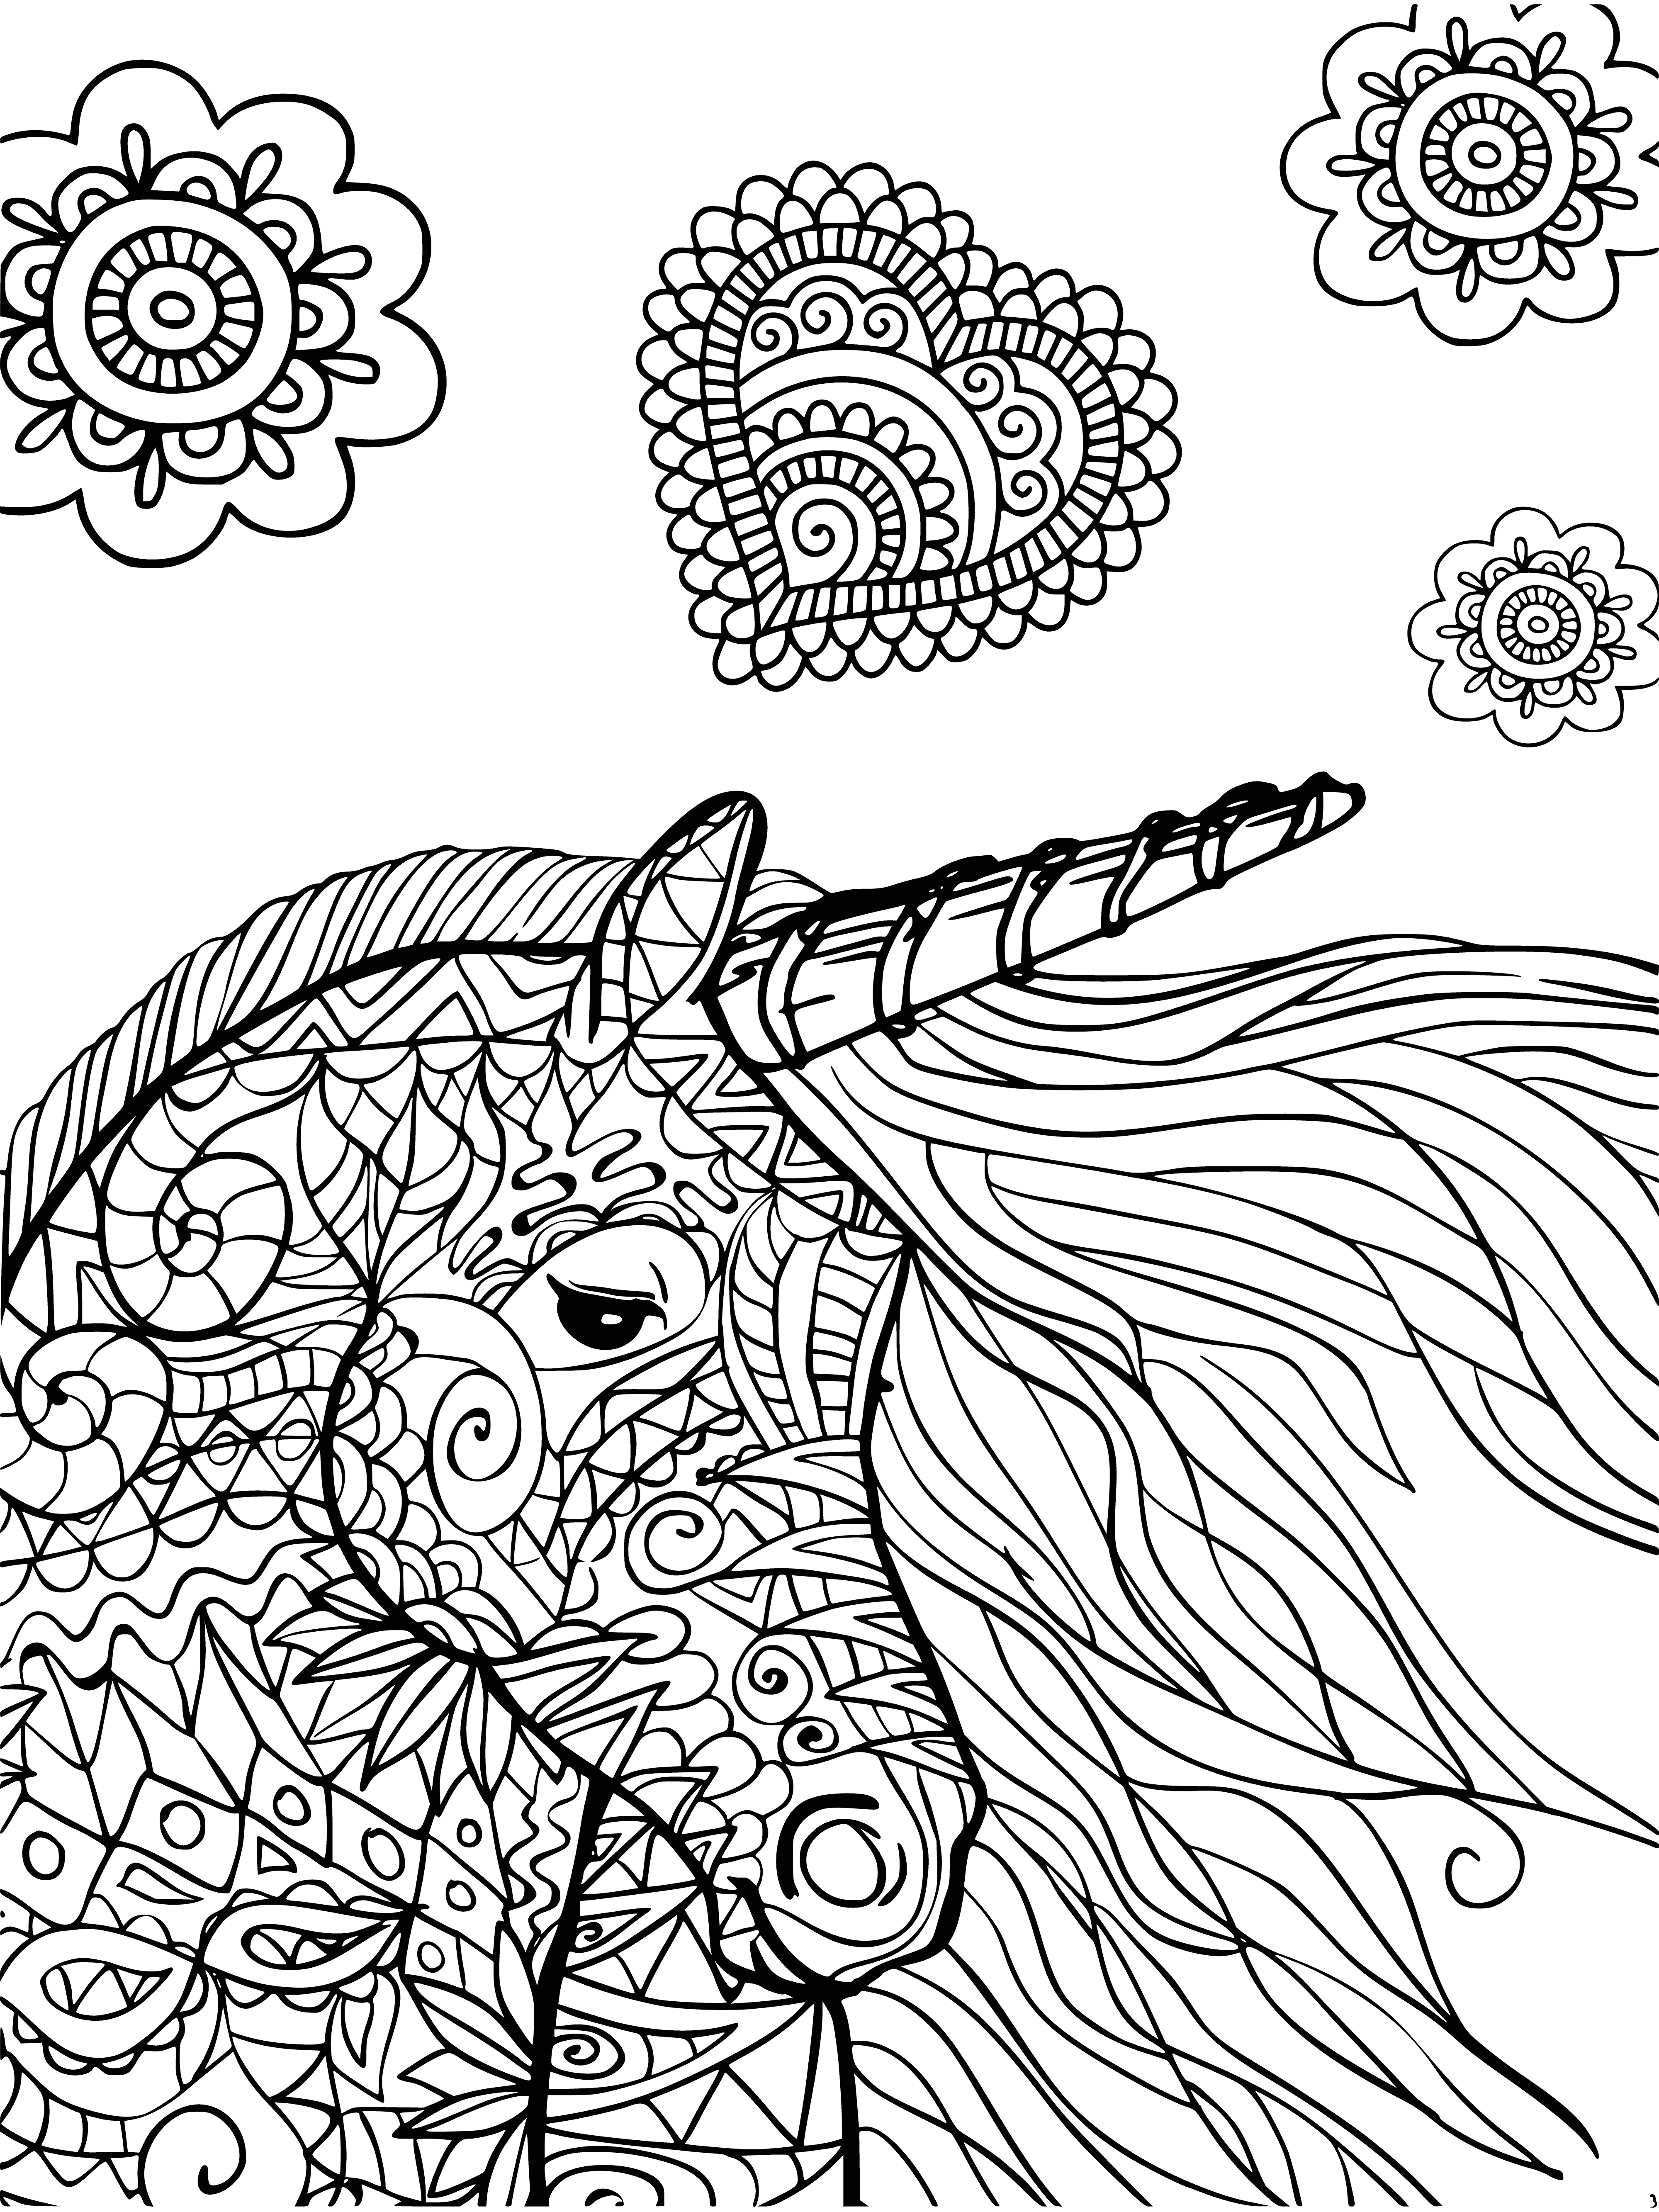 Unicorno pagina da colorare